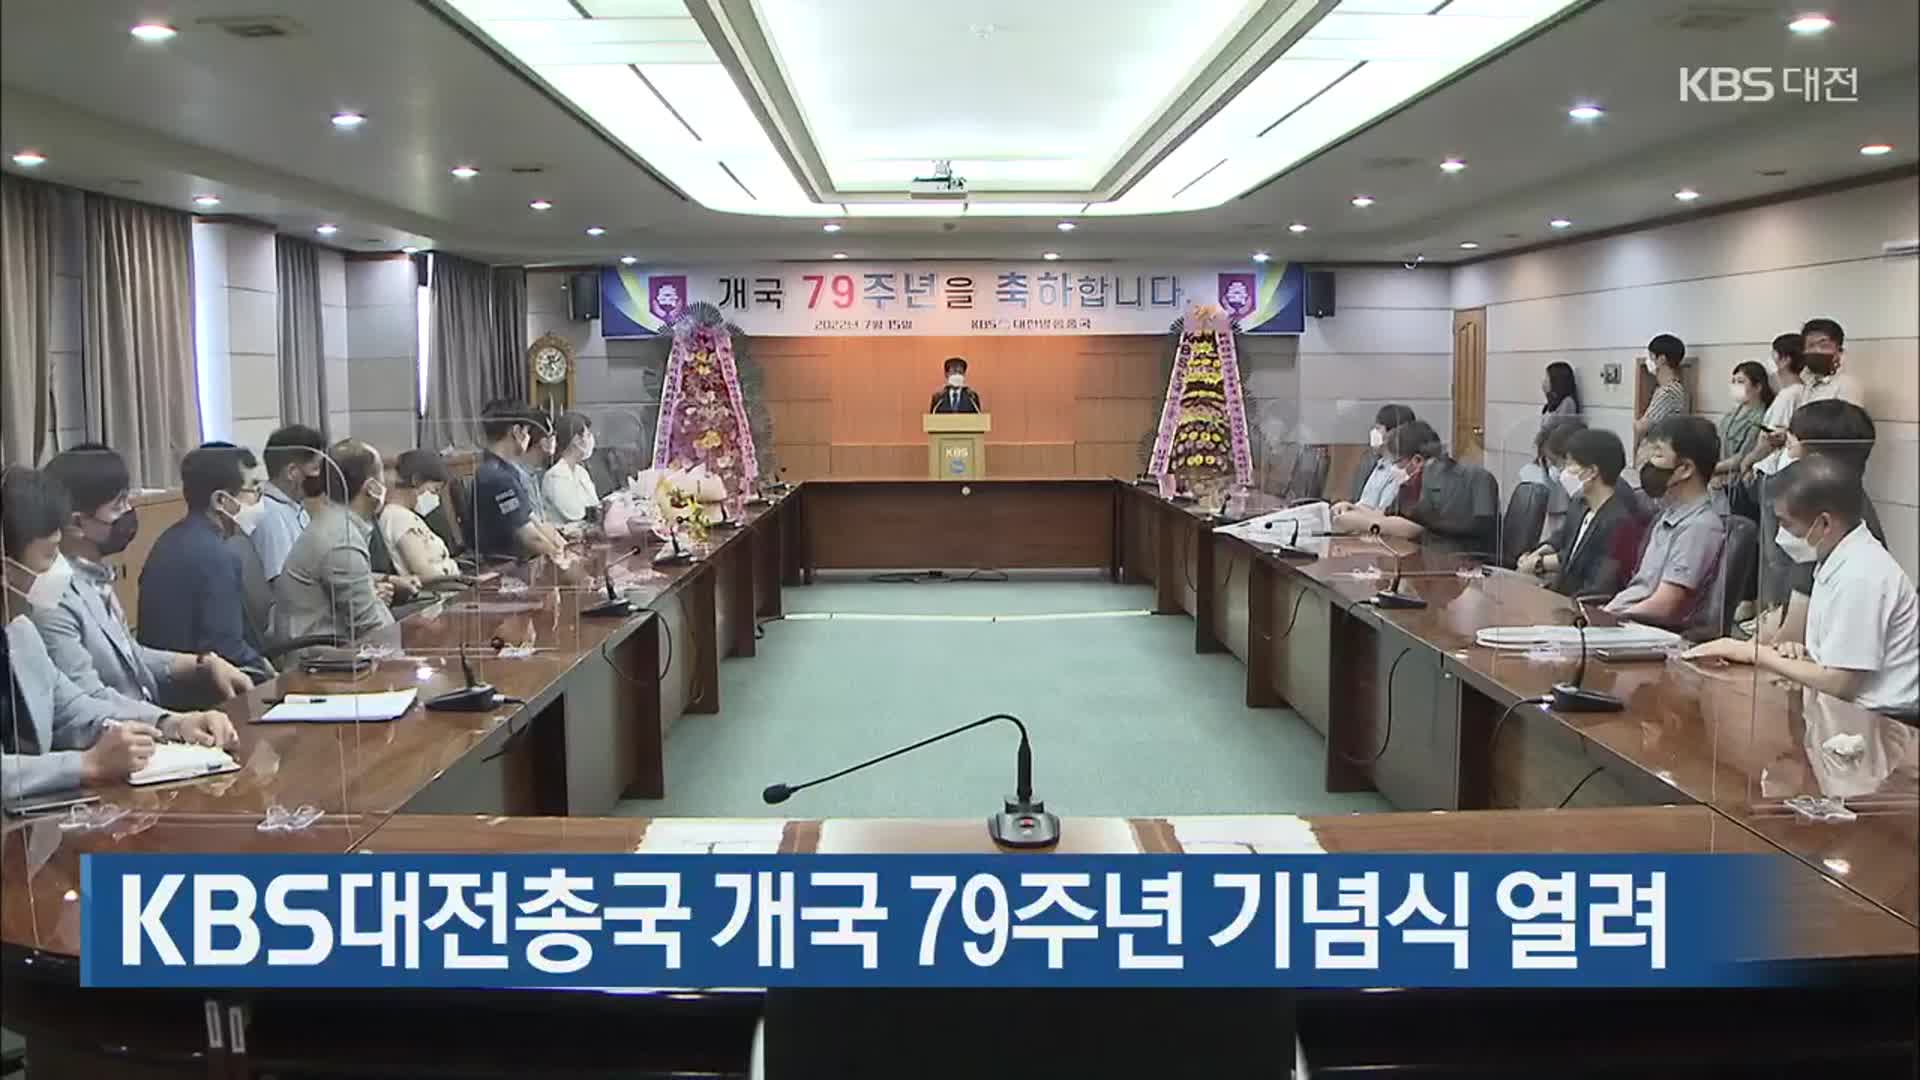 KBS 대전총국 개국 79주년 기념식 열려